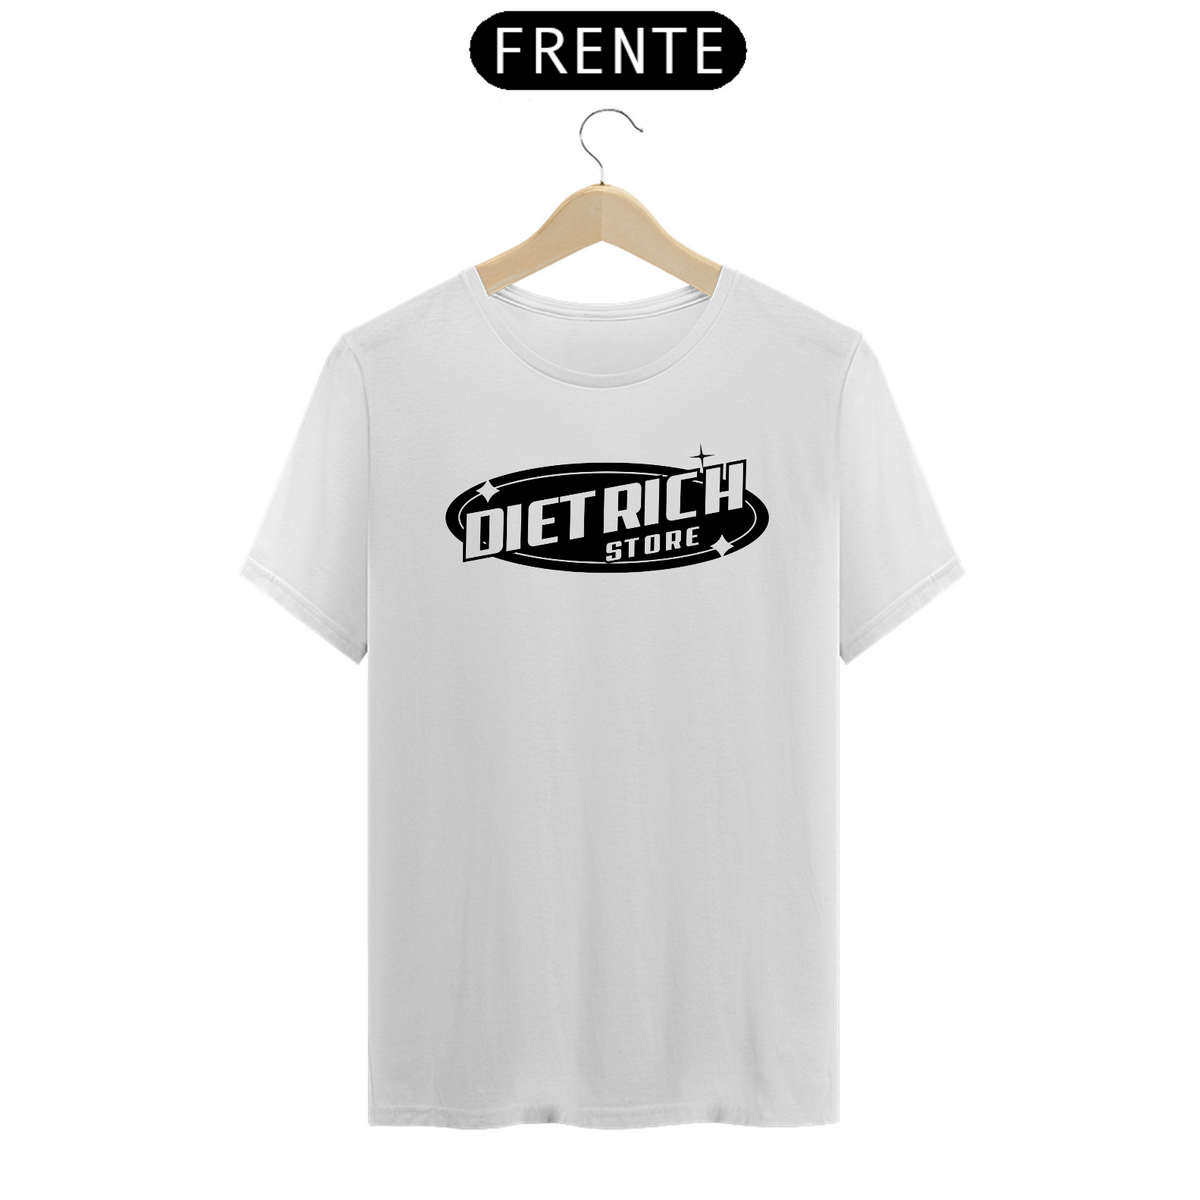 Nome do produto: Camiseta Dietrich Store